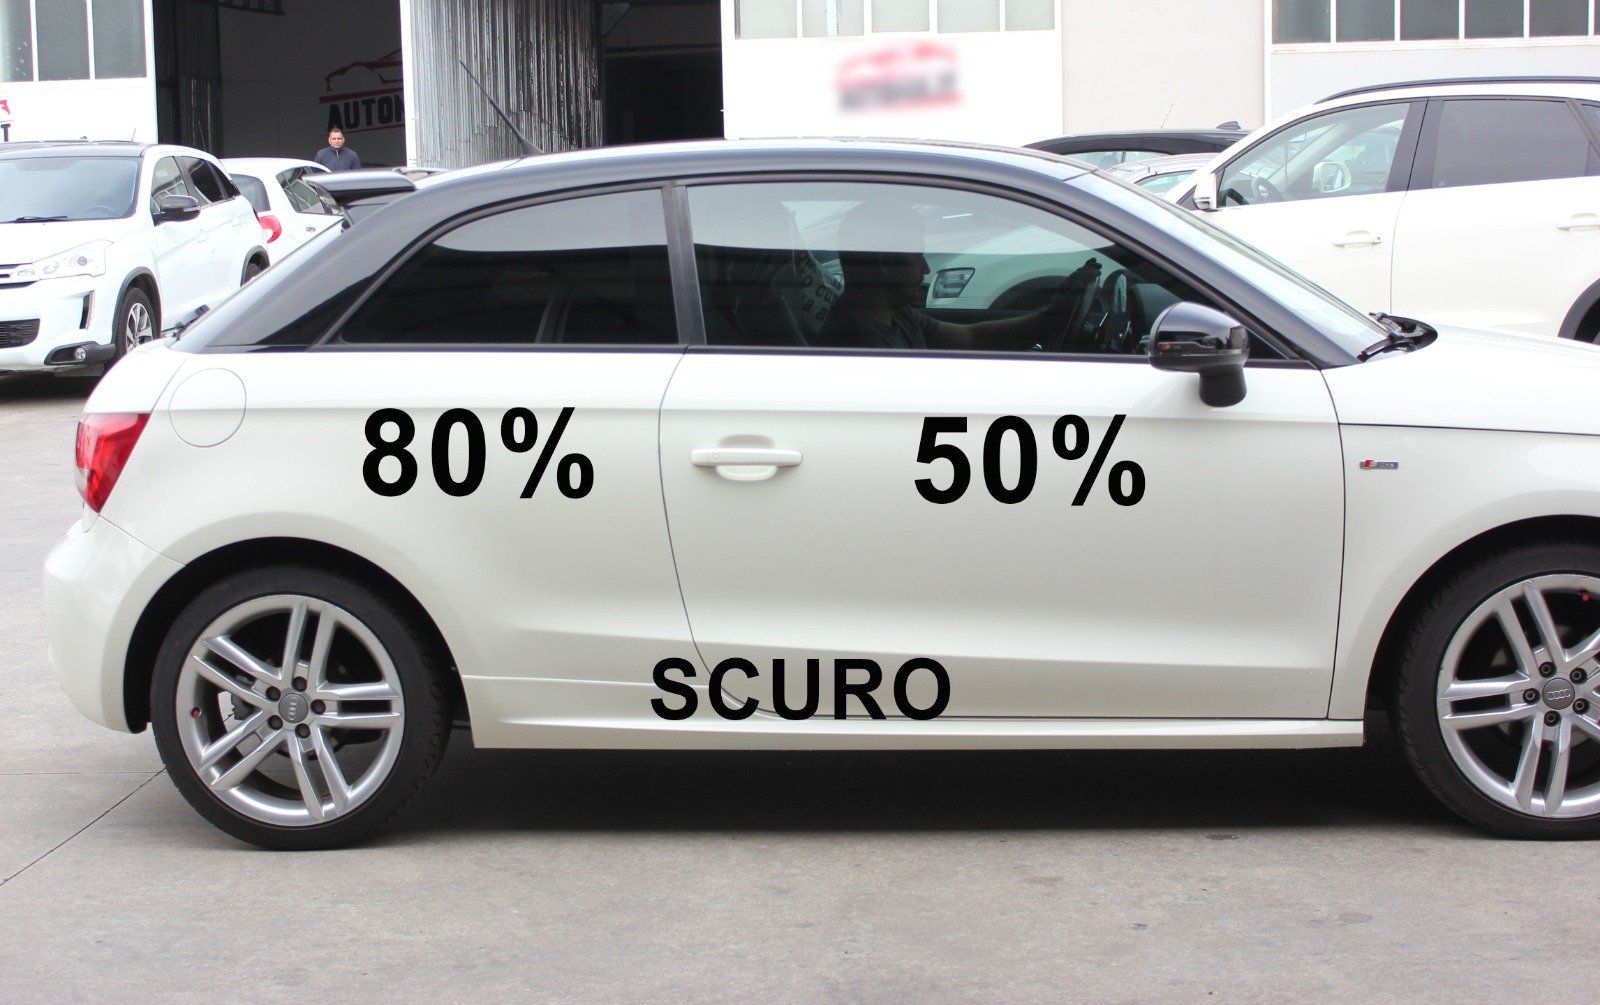 Audi A1 a tre porte oscuramento vetri auto con tonalità gradazione 50% e 80%